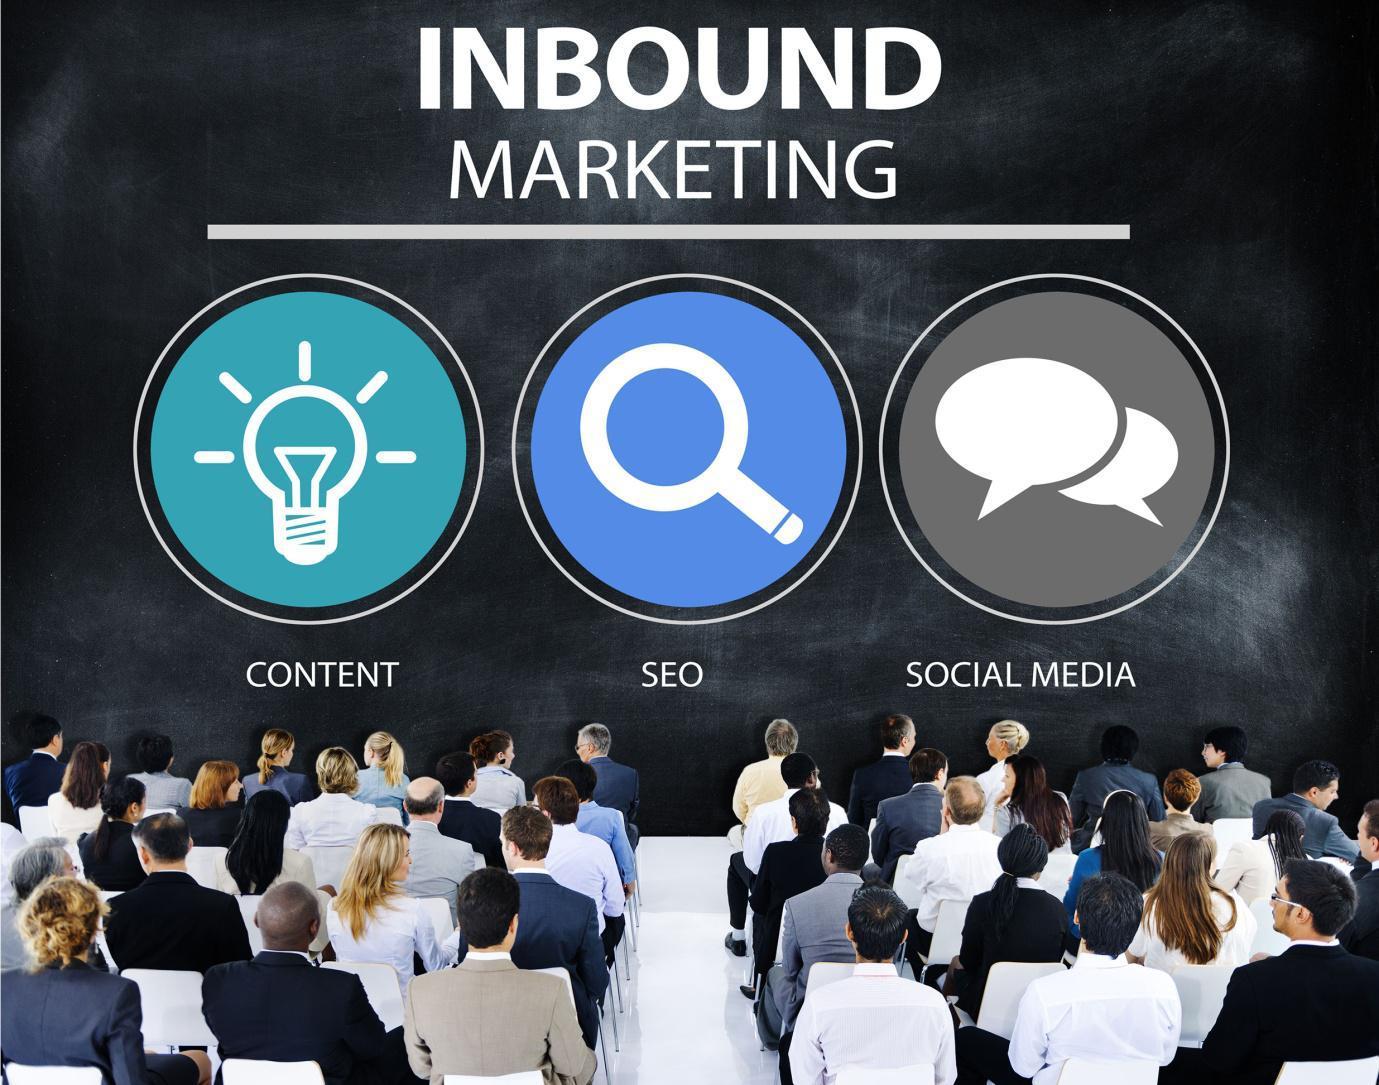 Build Your Brand via Inbound Marketing